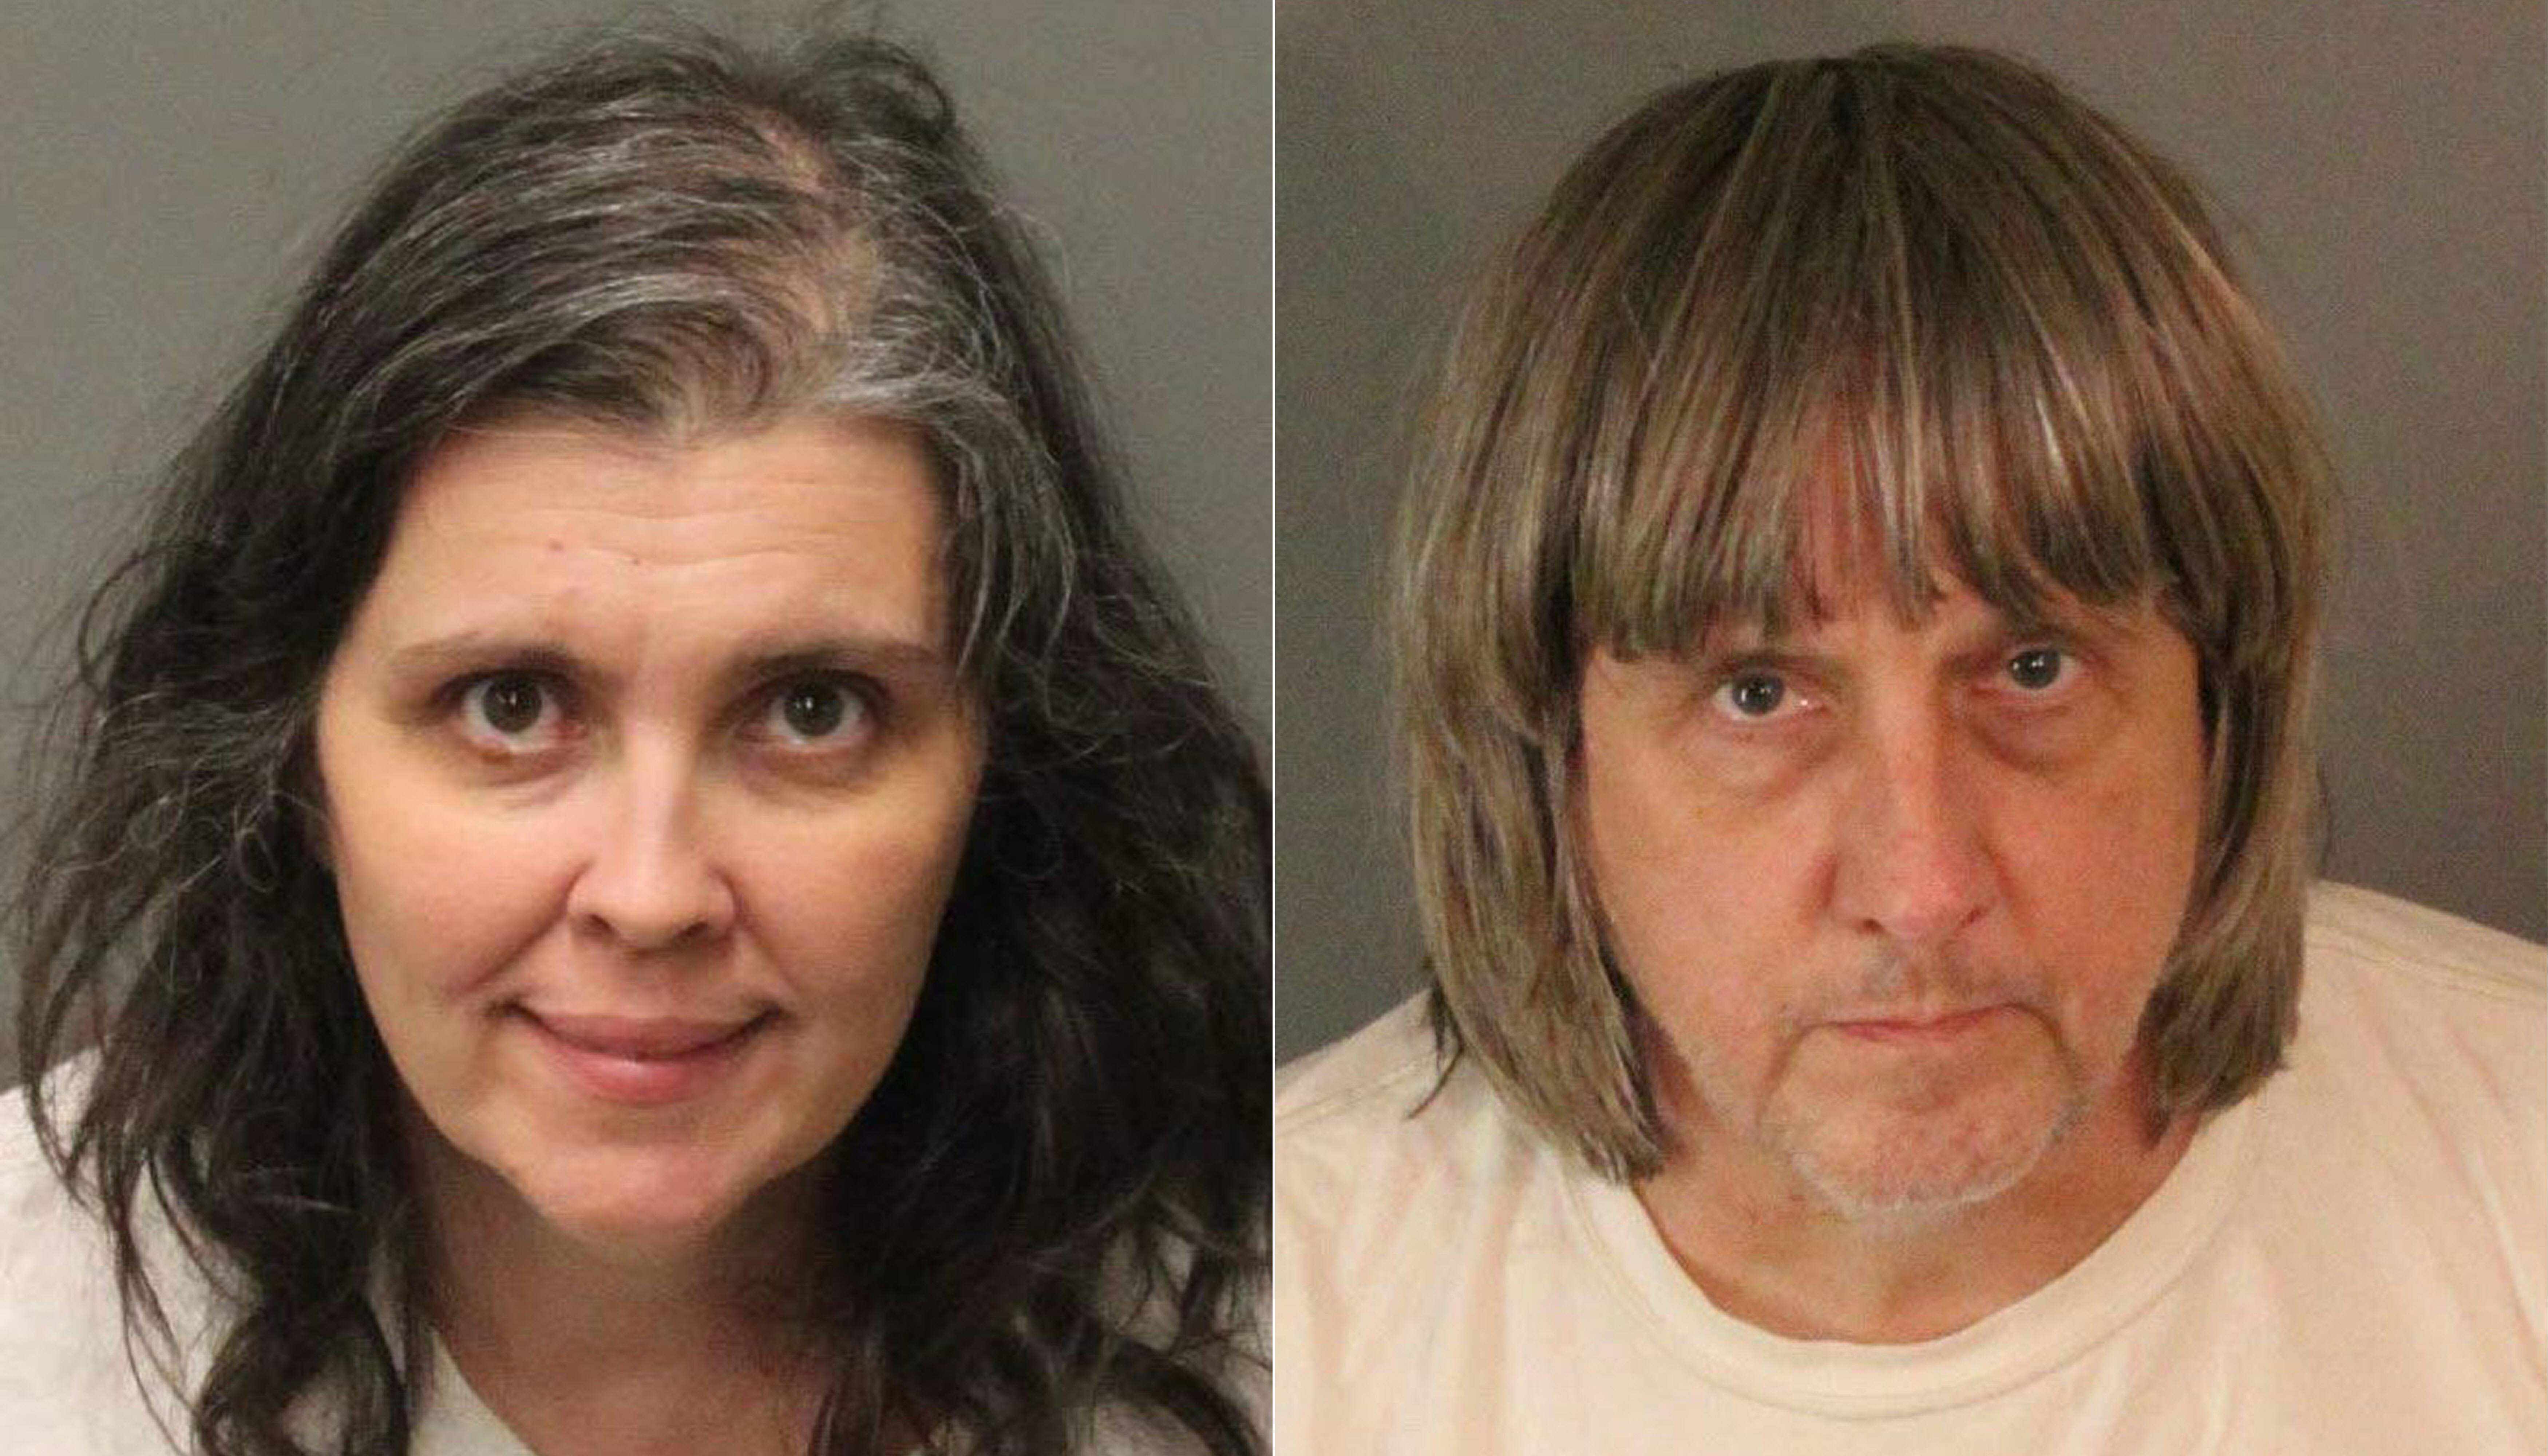 La pareja de California fue encarcelada por al menos 25 años el viernes 19 de abril de 2019 luego de haber encarcelado y torturado a 12 de sus 13 hijos en un caso espeluznante de la "Casa de los Horrores" que conmocionó al mundo. (Foto Prensa Libre: AFP)